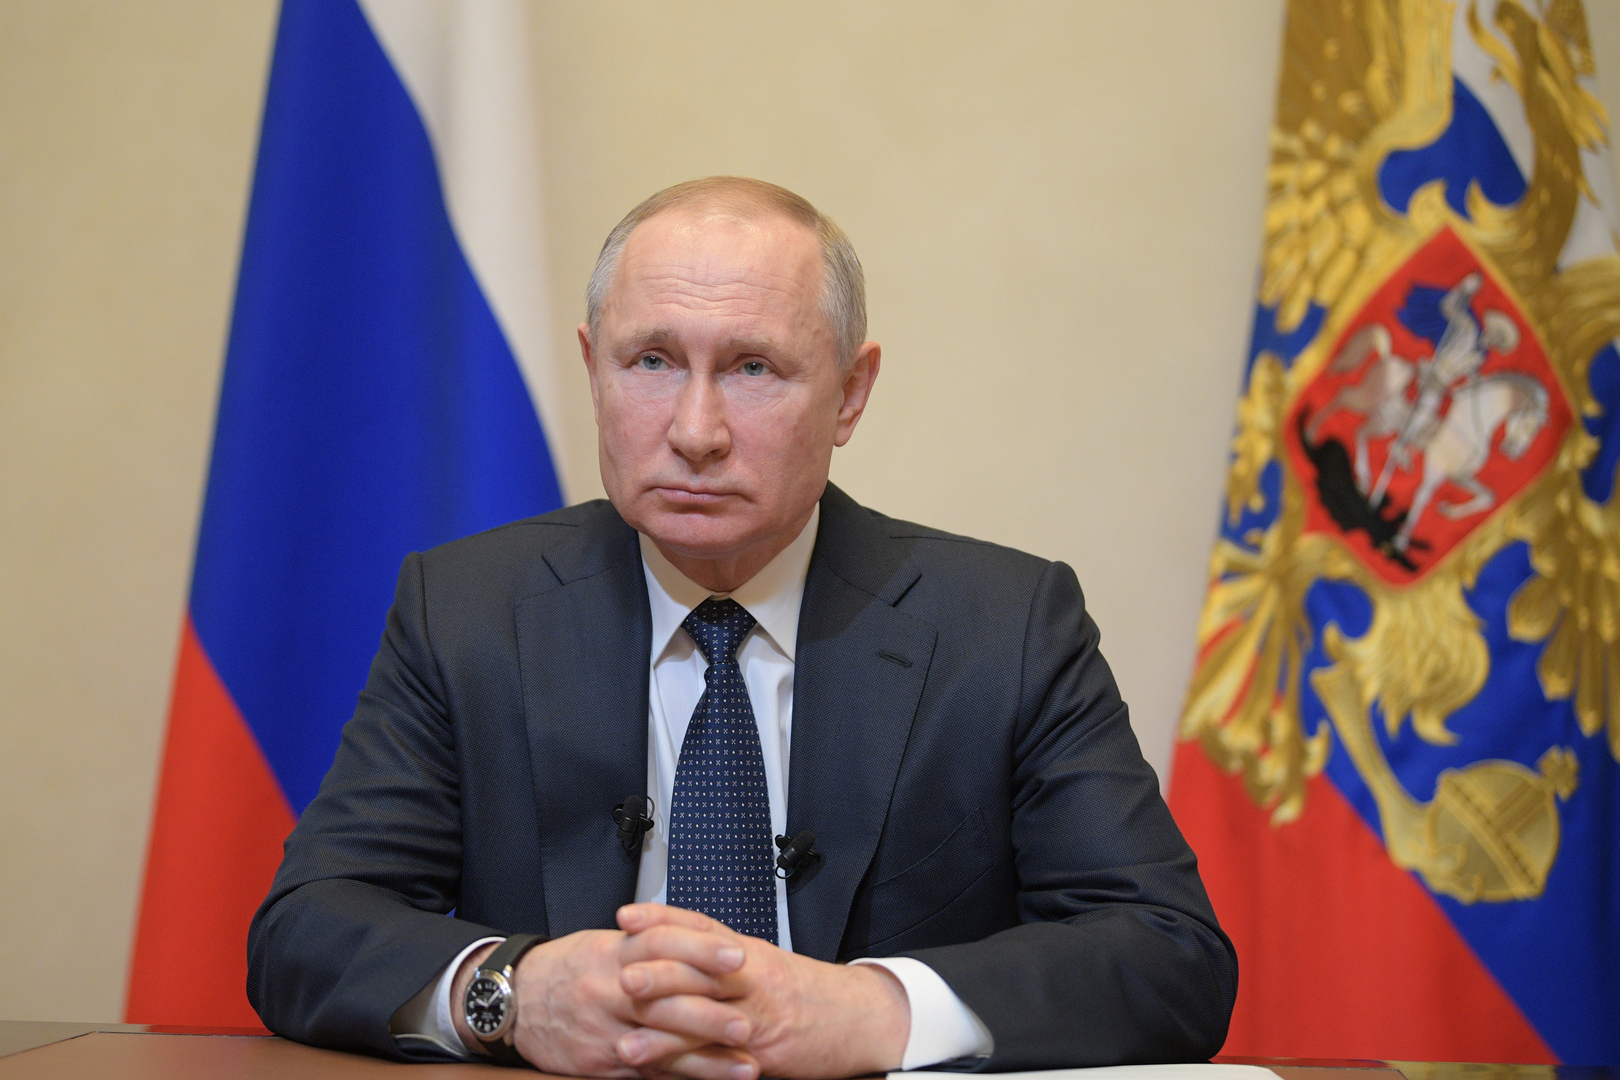 بوتين يطرح سلسلة اقتراحات اجتماعية واقتصادية لكبح تفشي كورونا في روسيا